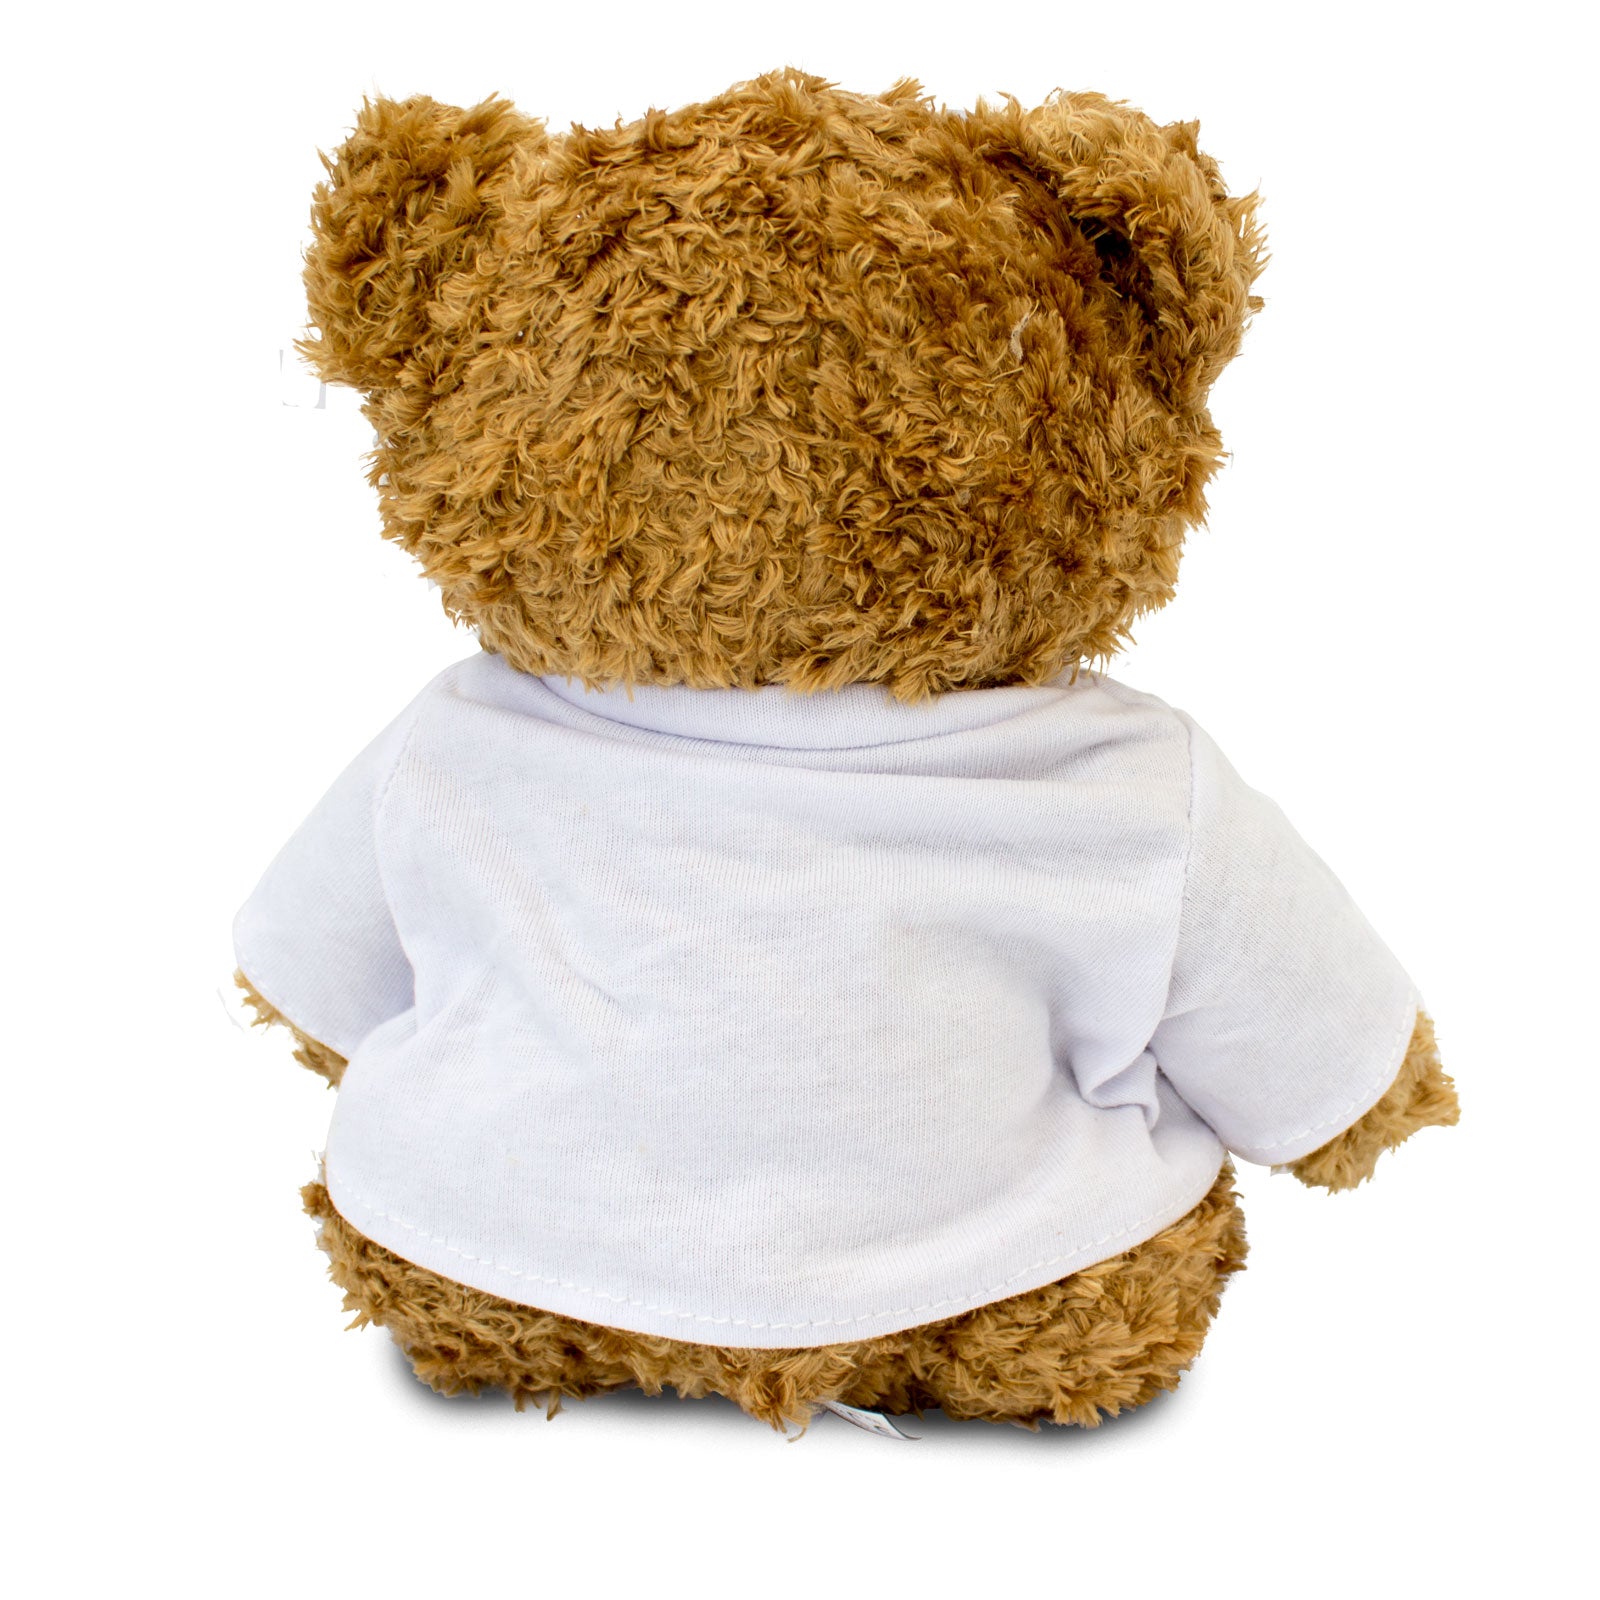 Get Well Soon Jenna - Teddy Bear